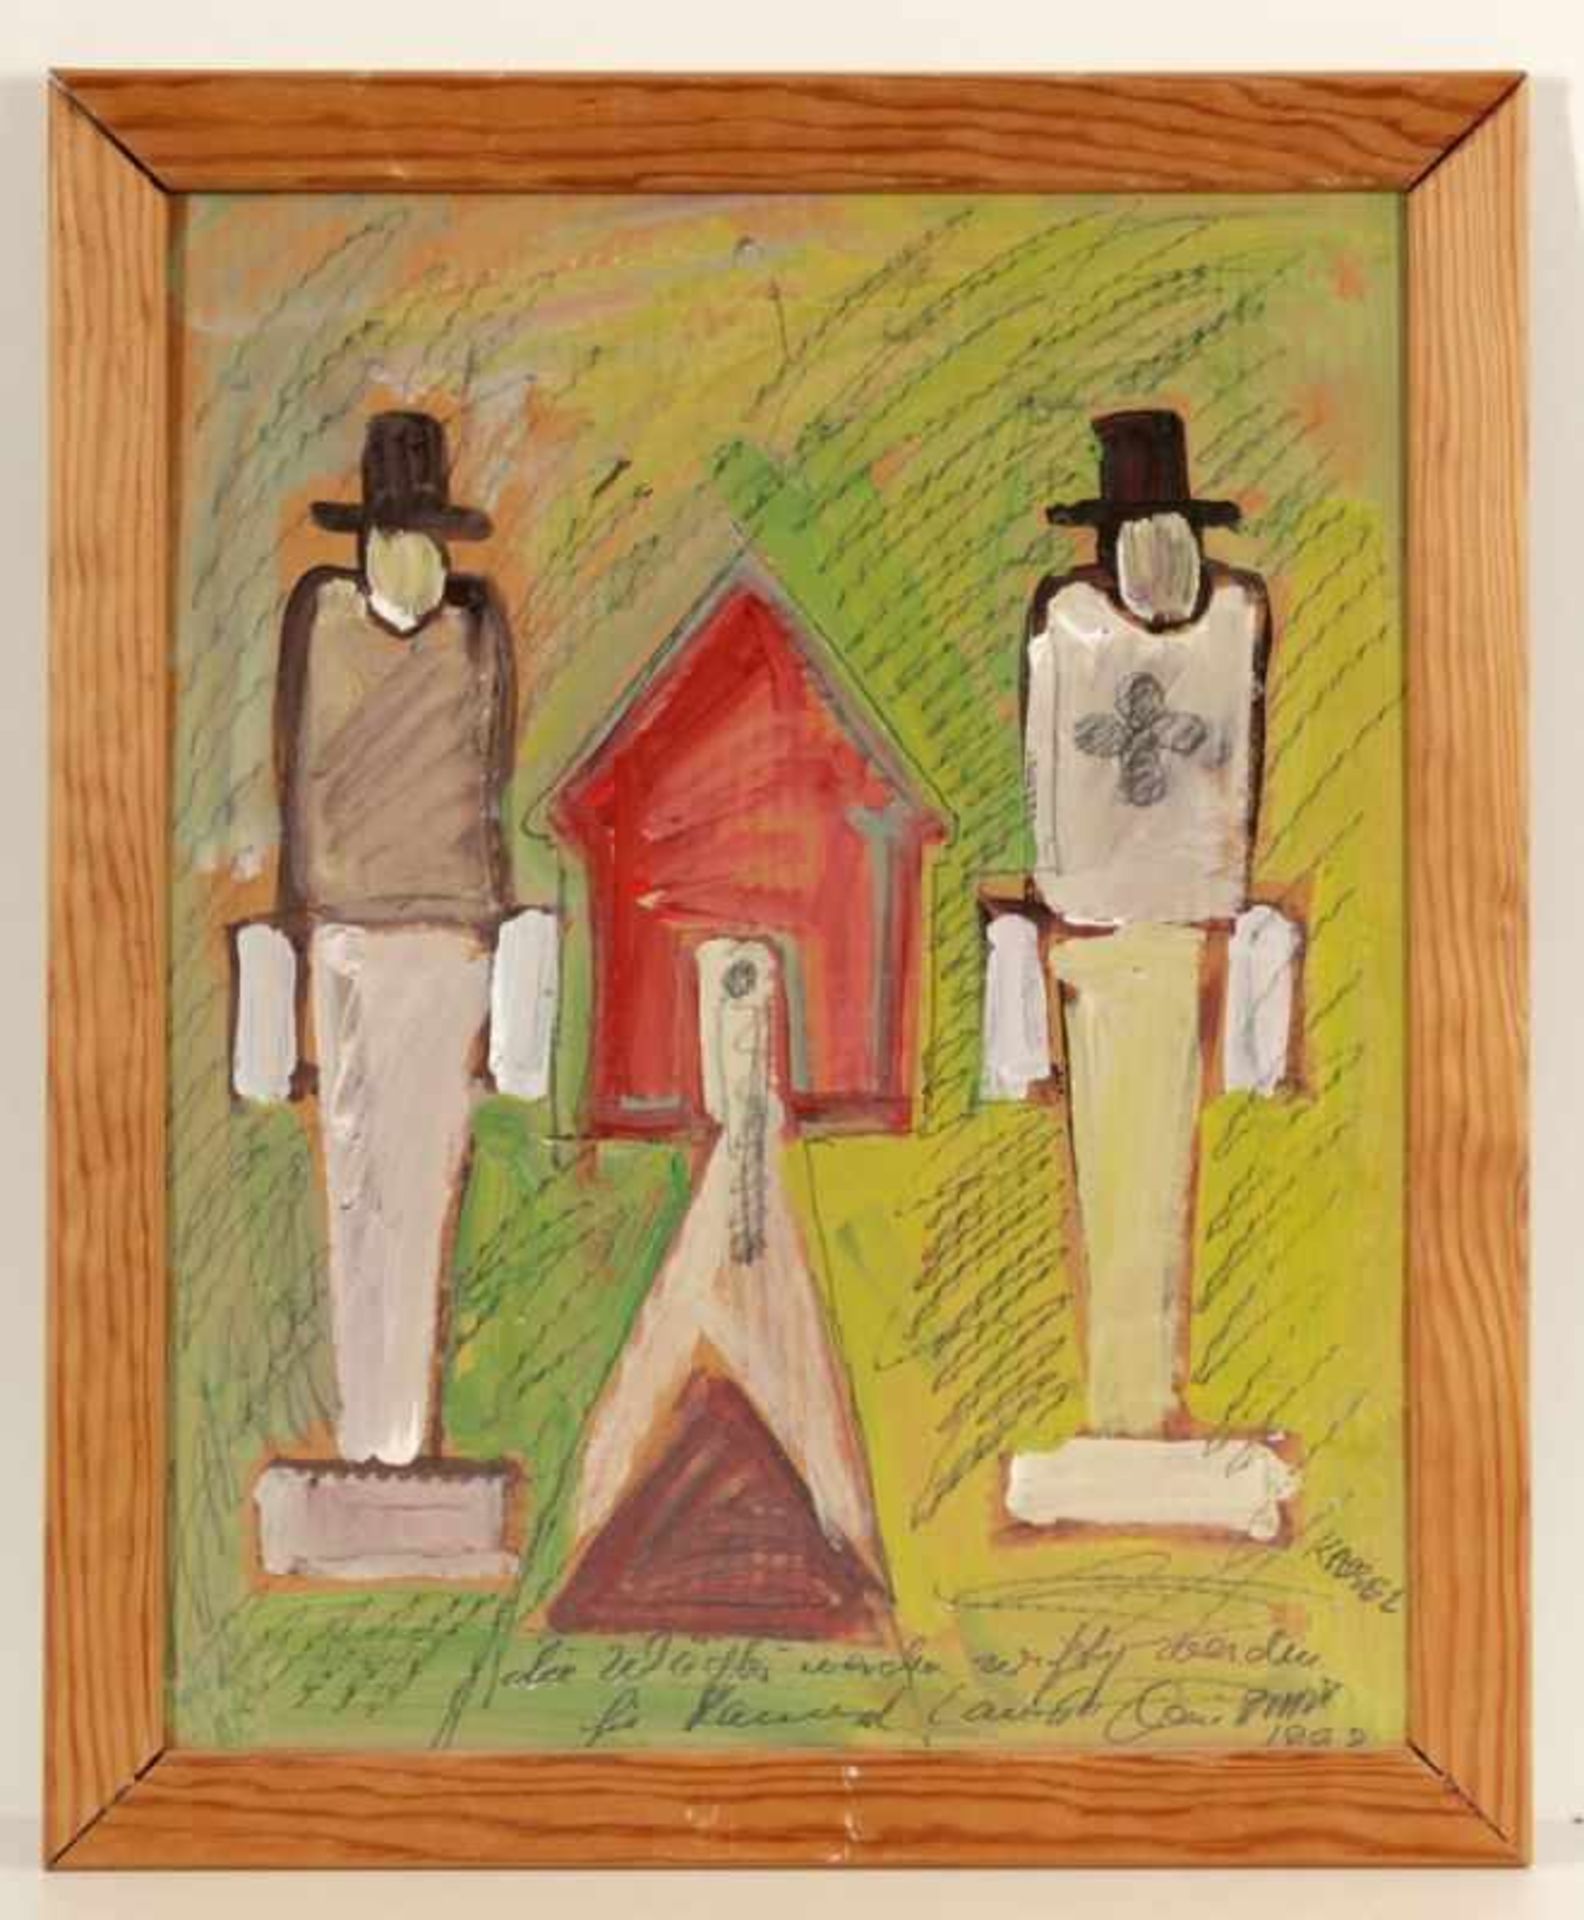 Anatol (Herzfeld)1931 Isternburg - "Die Wächter werden wichtig werden" - Gouache/Karton. 50 x 40 cm. - Image 2 of 2